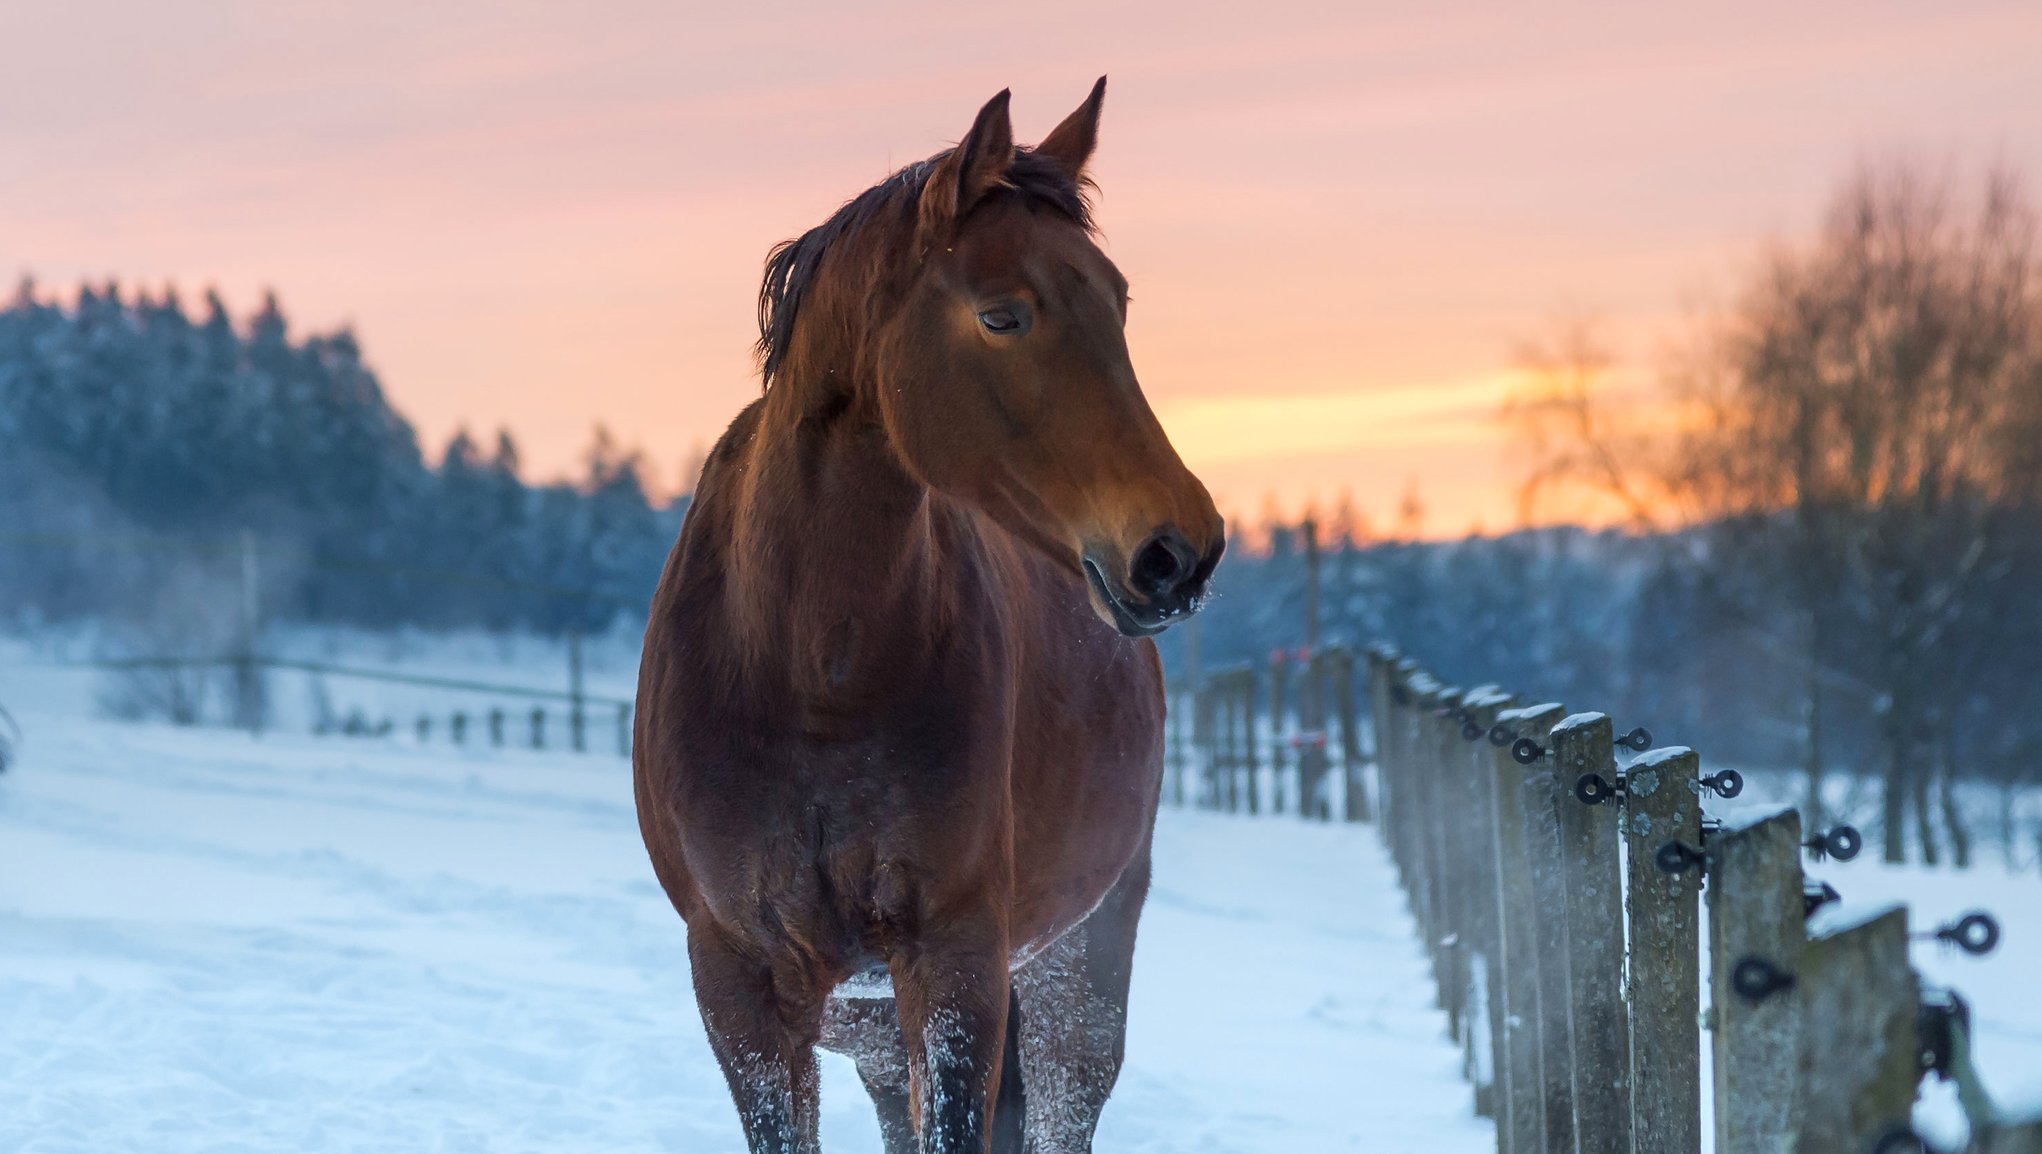 häst i snöig hage